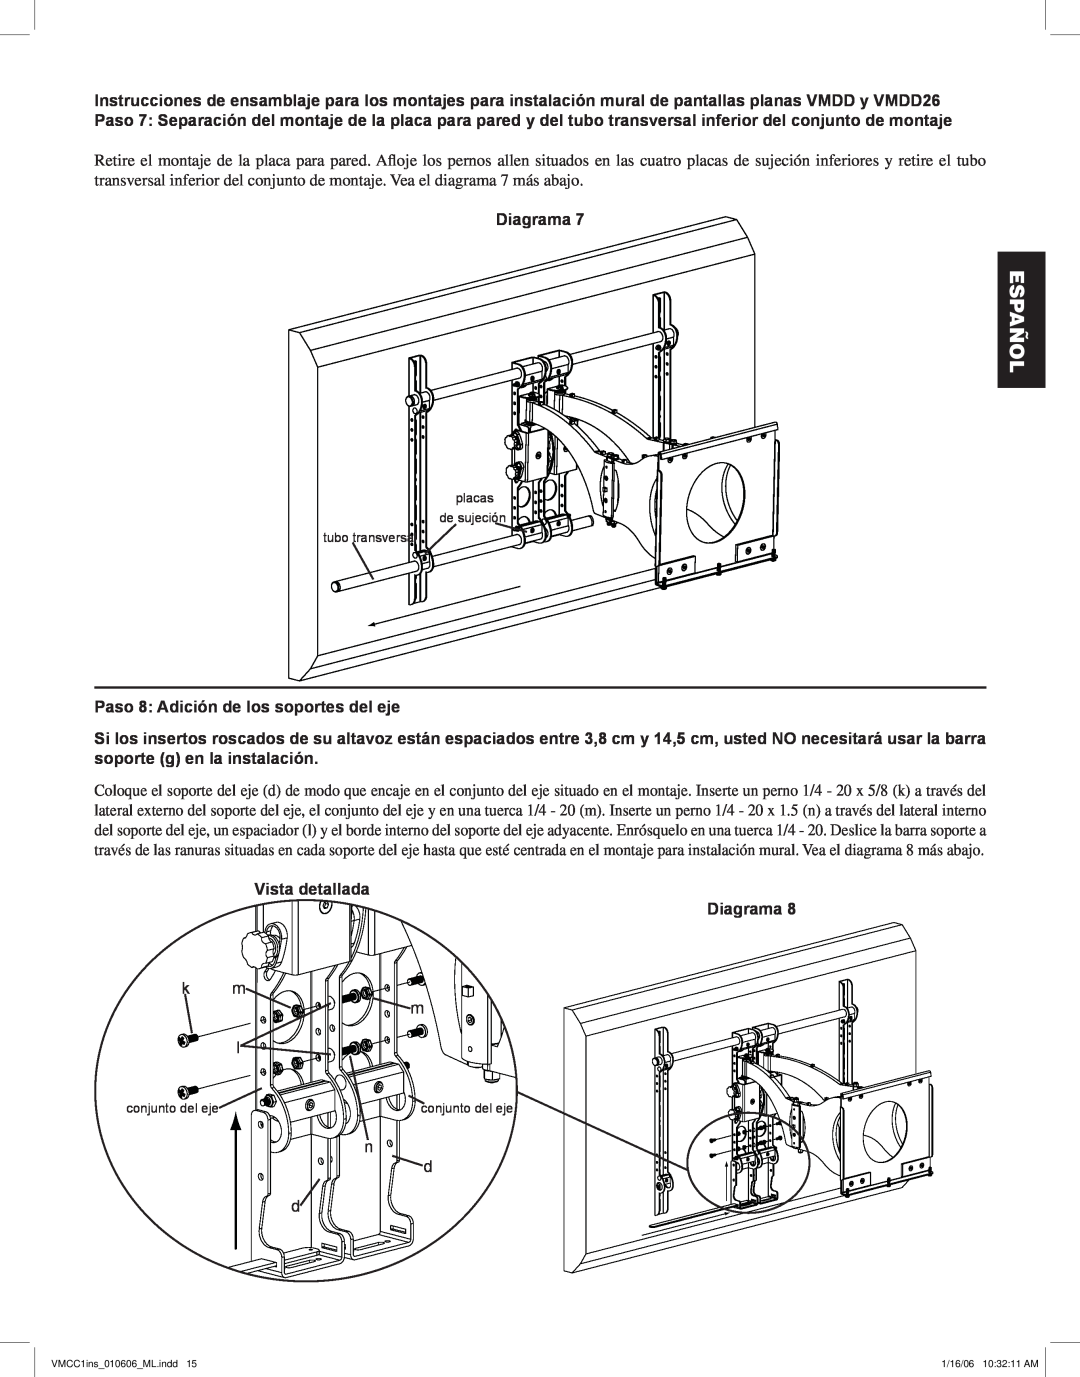 Sanus Systems VMCC1 manual Paso 8 Adición de los soportes del eje, Vista detallada Diagrama, Español 